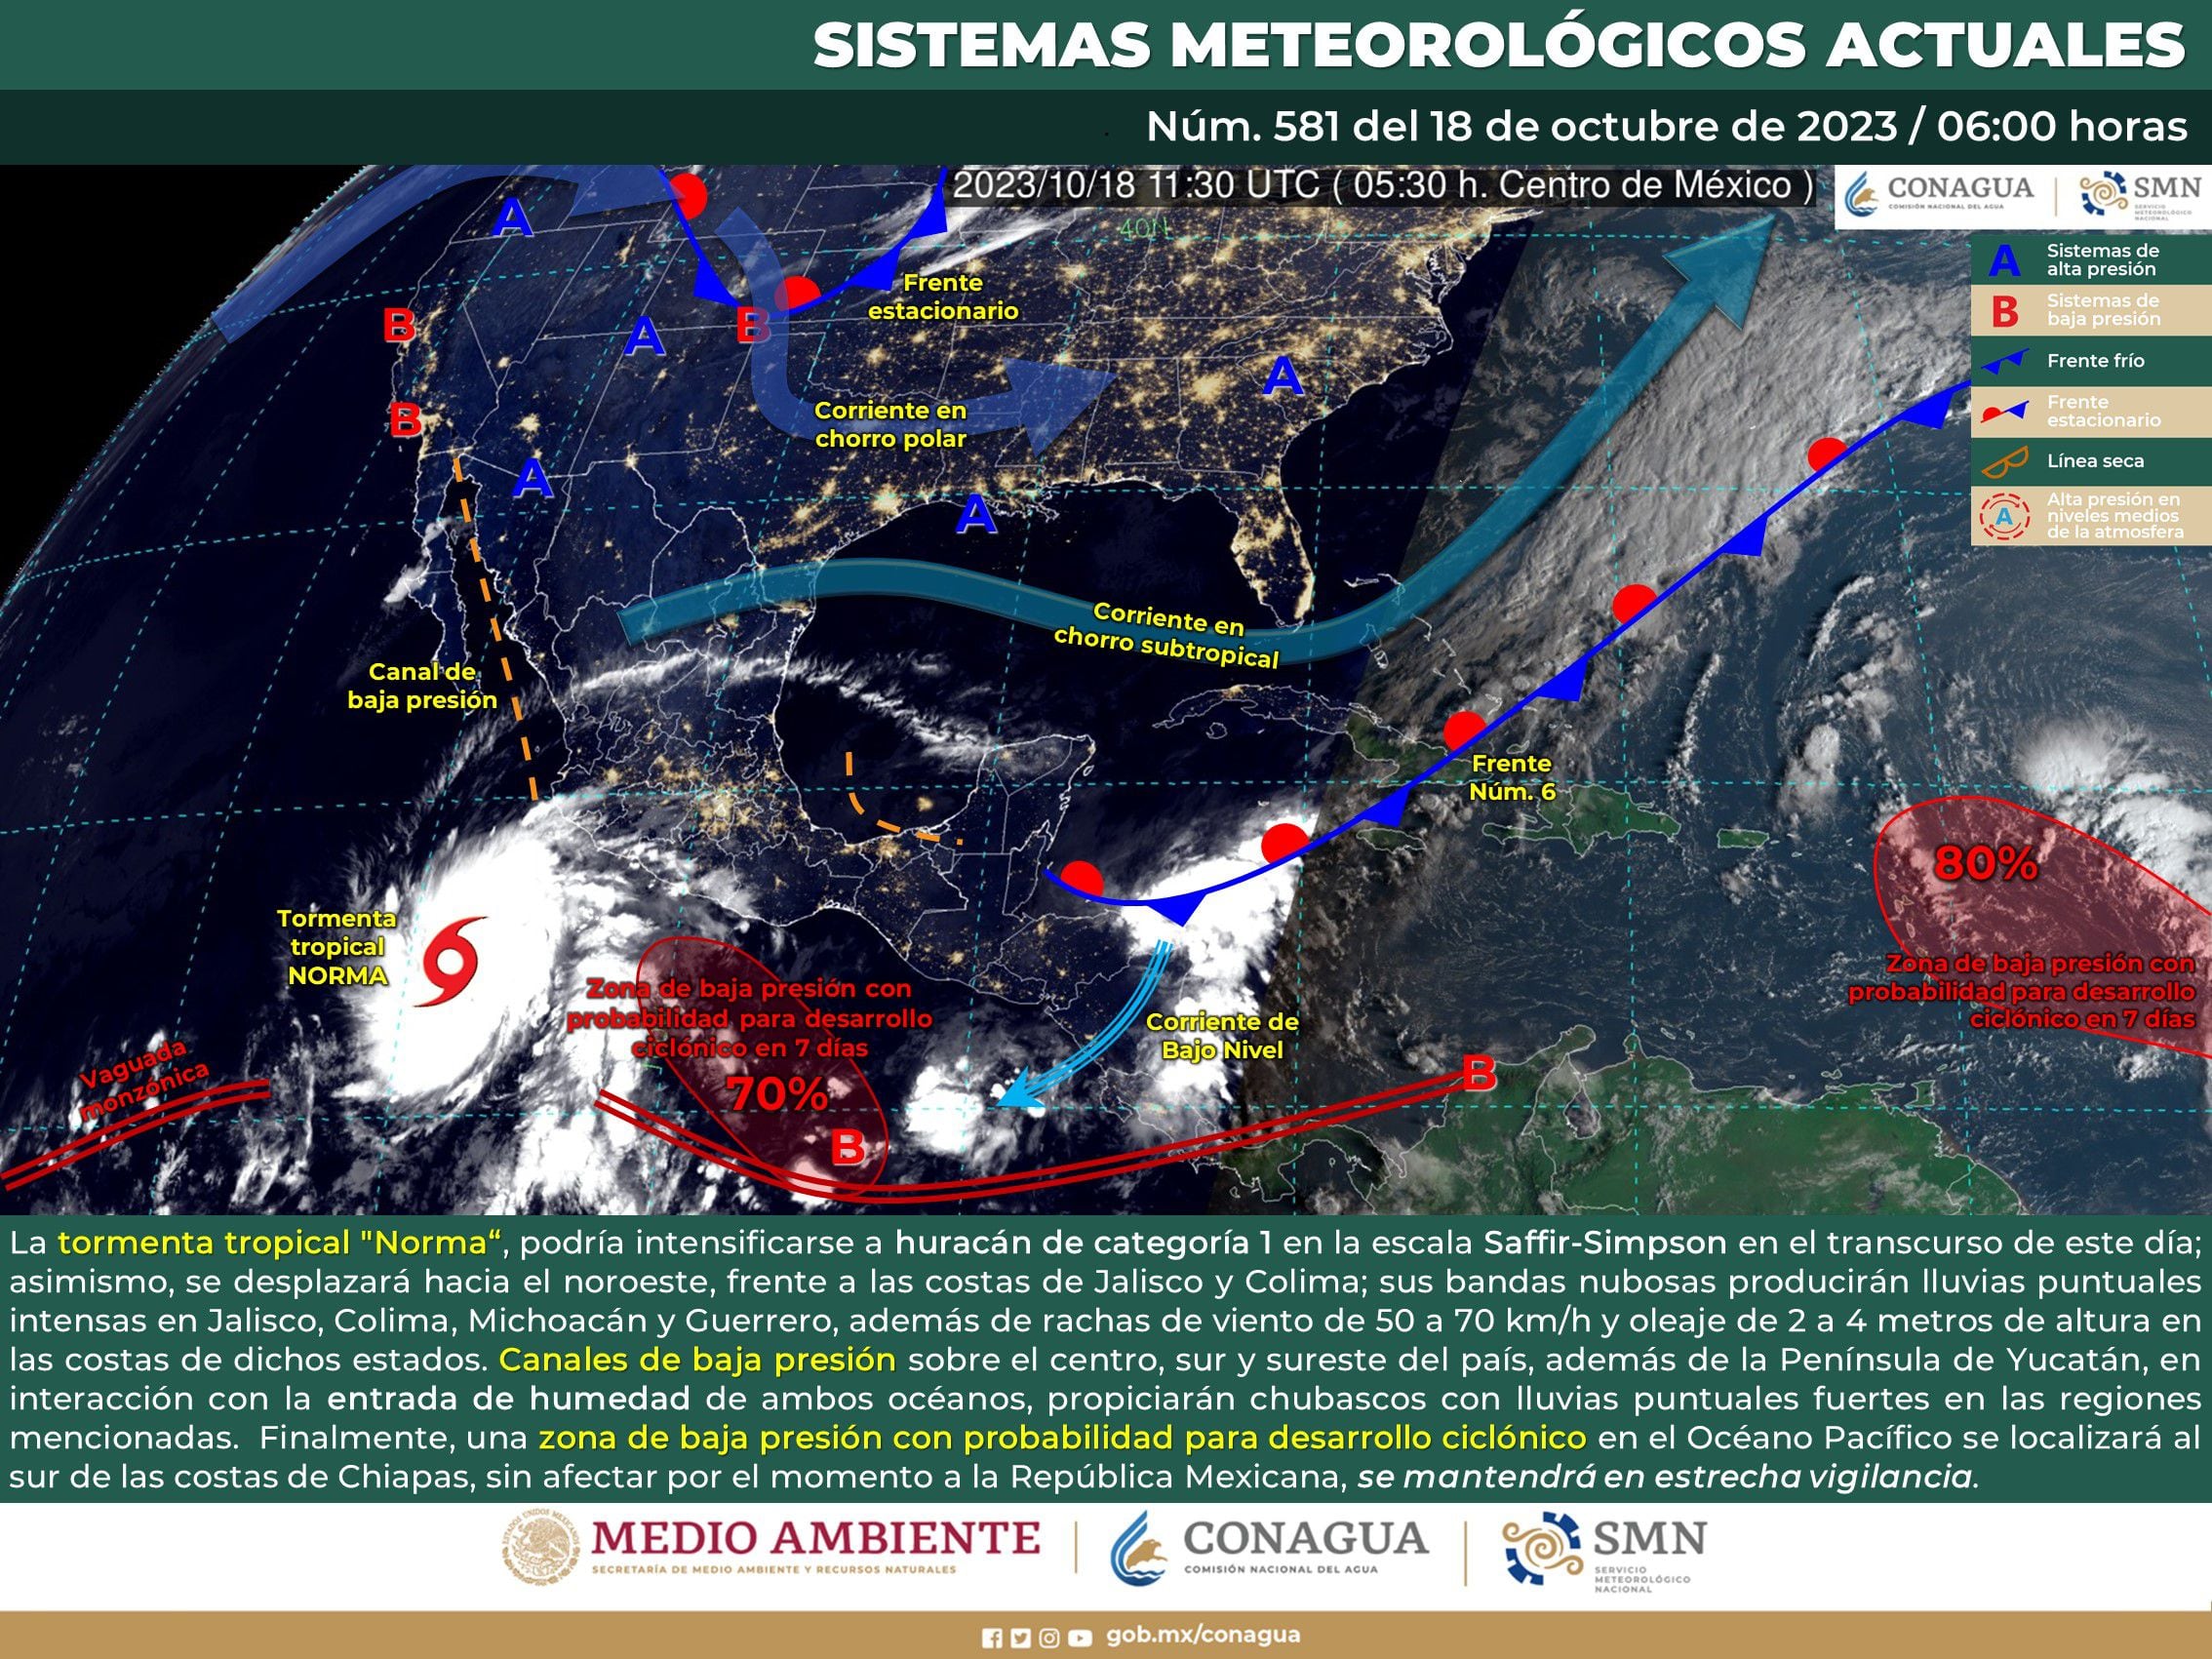 El organismo difundió un mapa con todos los sistemas meteorológicos que actualmente afectan a México. Foto: SMN